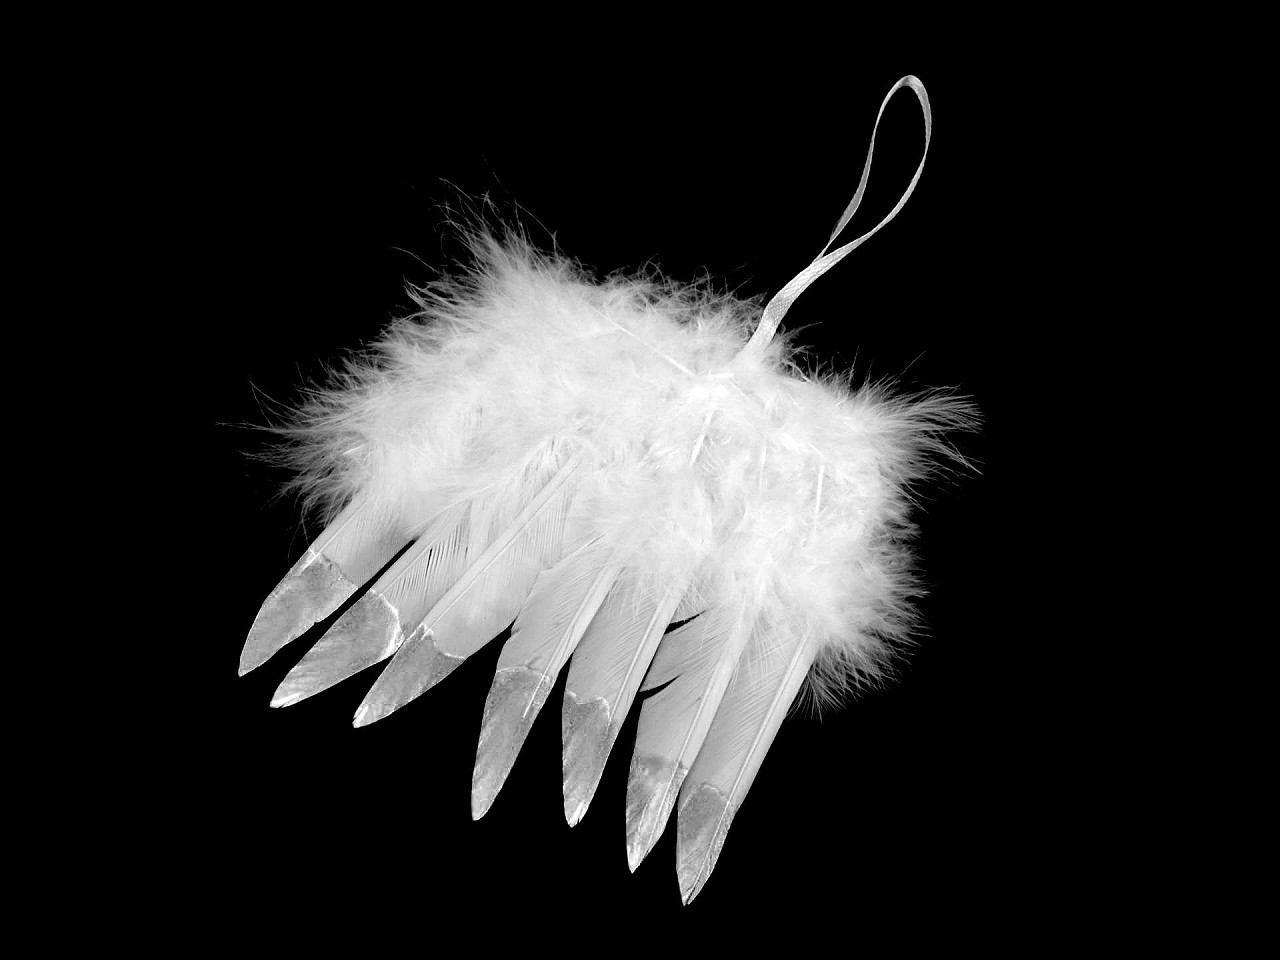 Dekorace andělská křídla s metalickým efektem, barva 1 bílá stříbrná